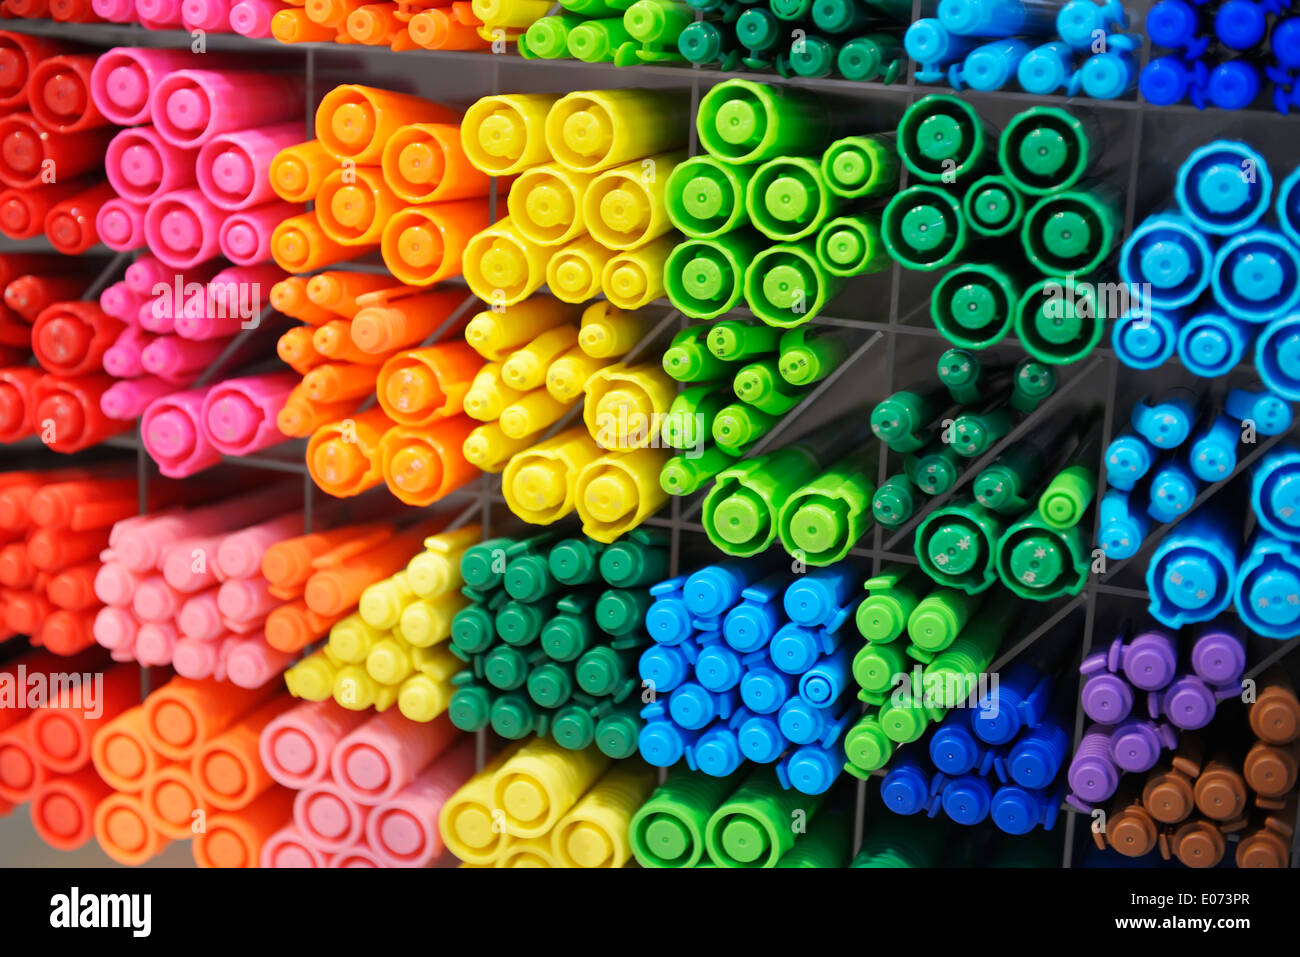 Marcatori colorati, evidenziatori sul display in un negozio, sfondo astratto Foto Stock